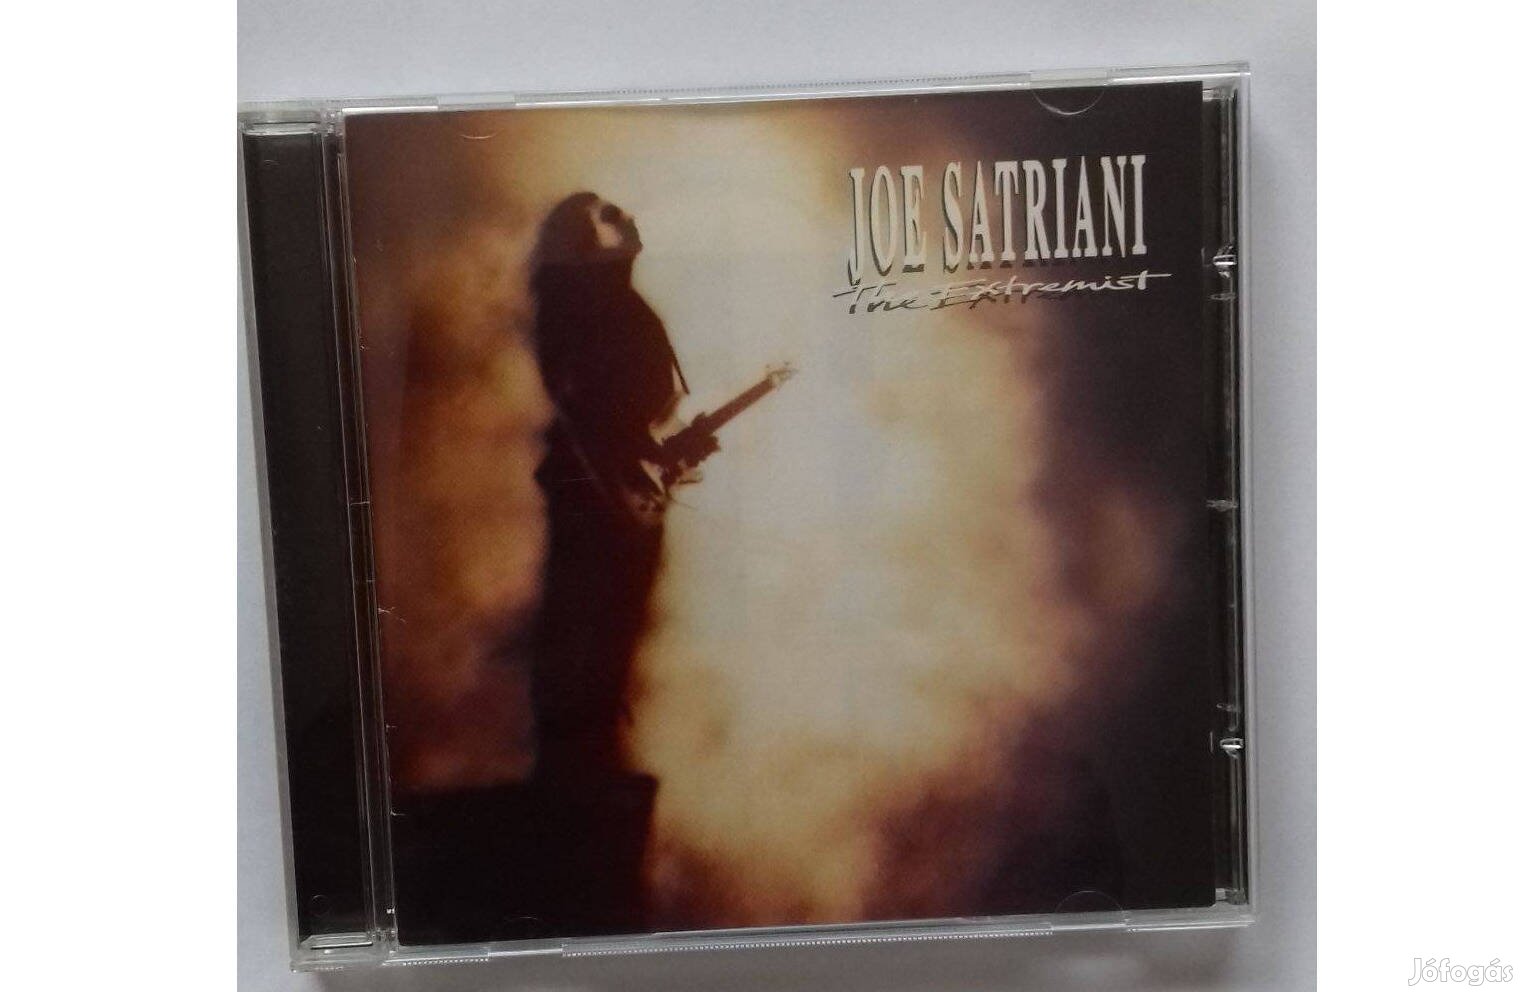 Joe Satriani: The Extremist CD